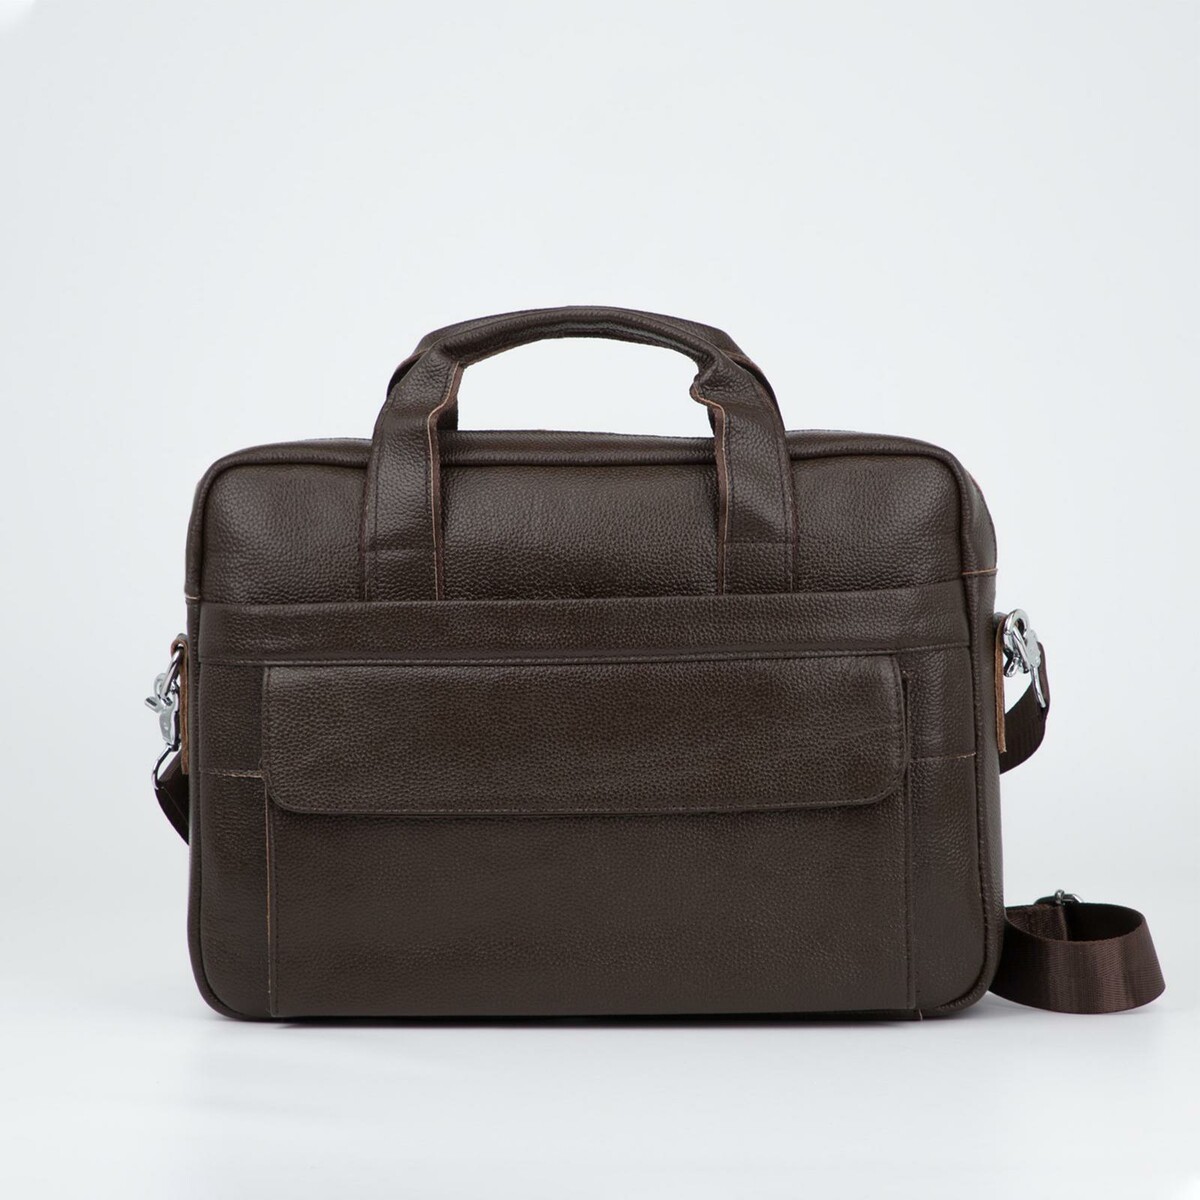 Сумка деловая, отдел на молнии, отдел для ноутбука, 3 наружных кармана, длинная стропа, цвет коричневый сумка для ноутбука reisenthel netbookbag dots